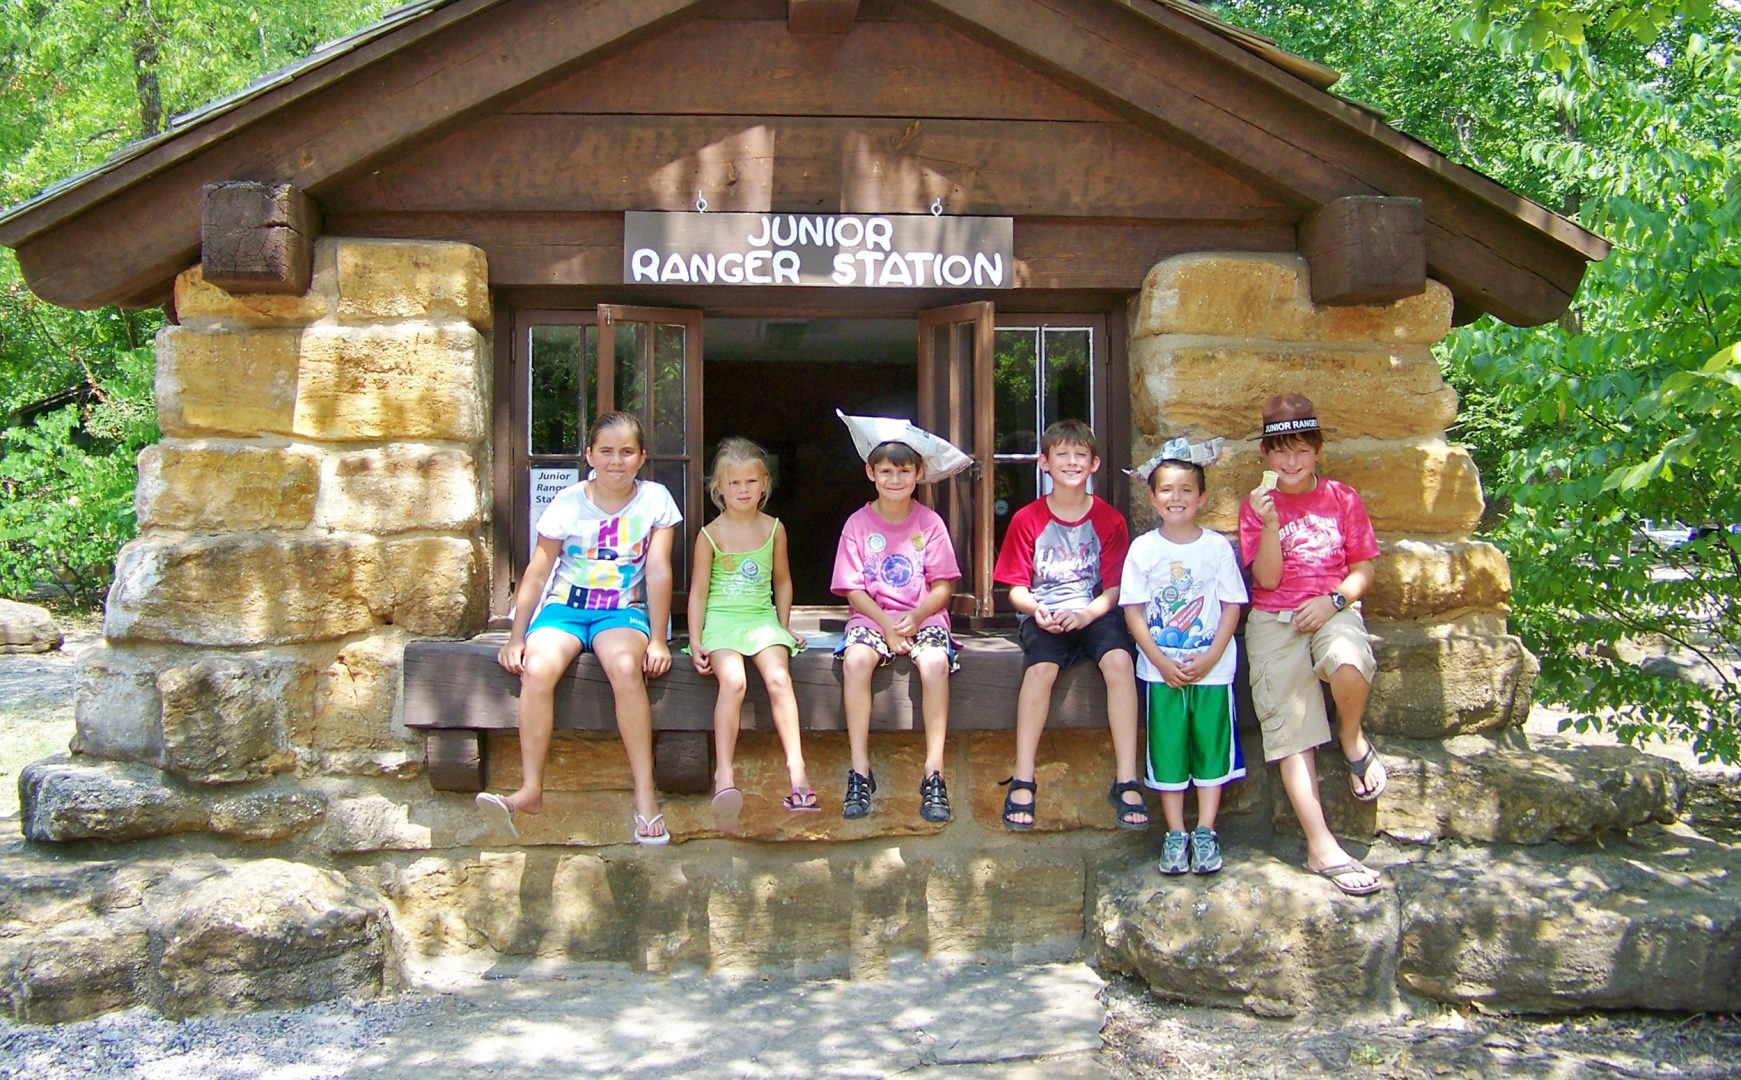 Junior Ranger Station